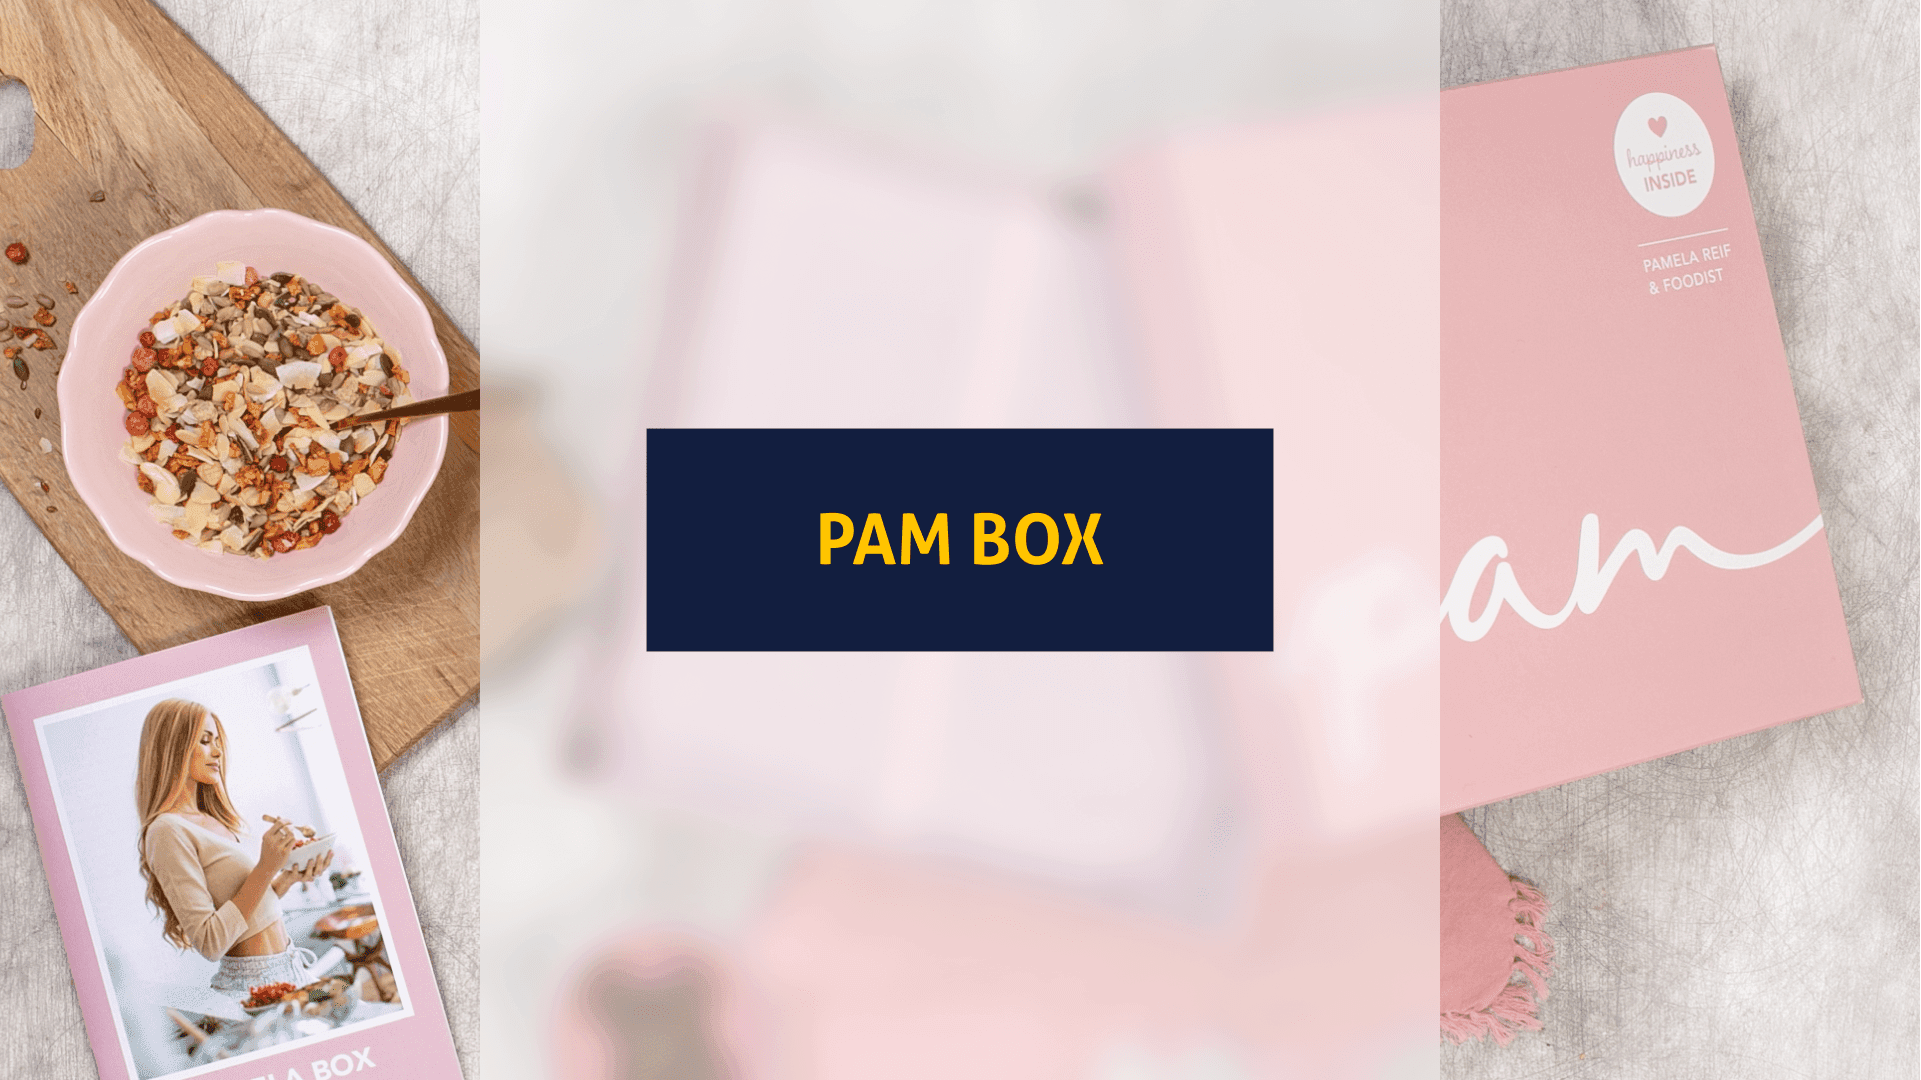 Titelbild für den Artikel: Happiness inside: Wir testen die Pam Box von Fitness-Influencerin Pamela Reif